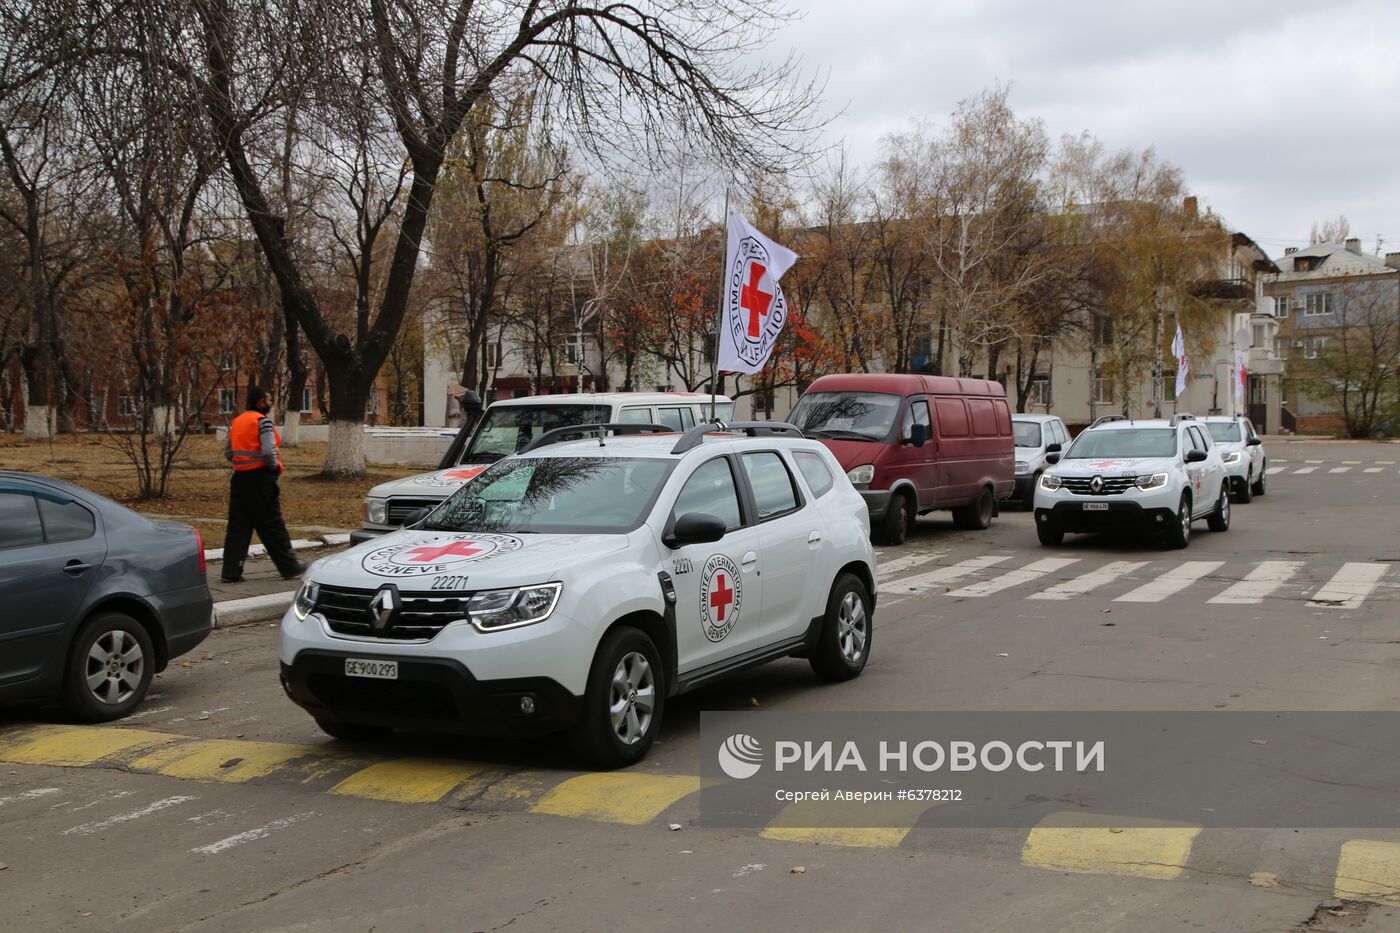 Глава Красного Креста П. Маурер посетил Донбасс